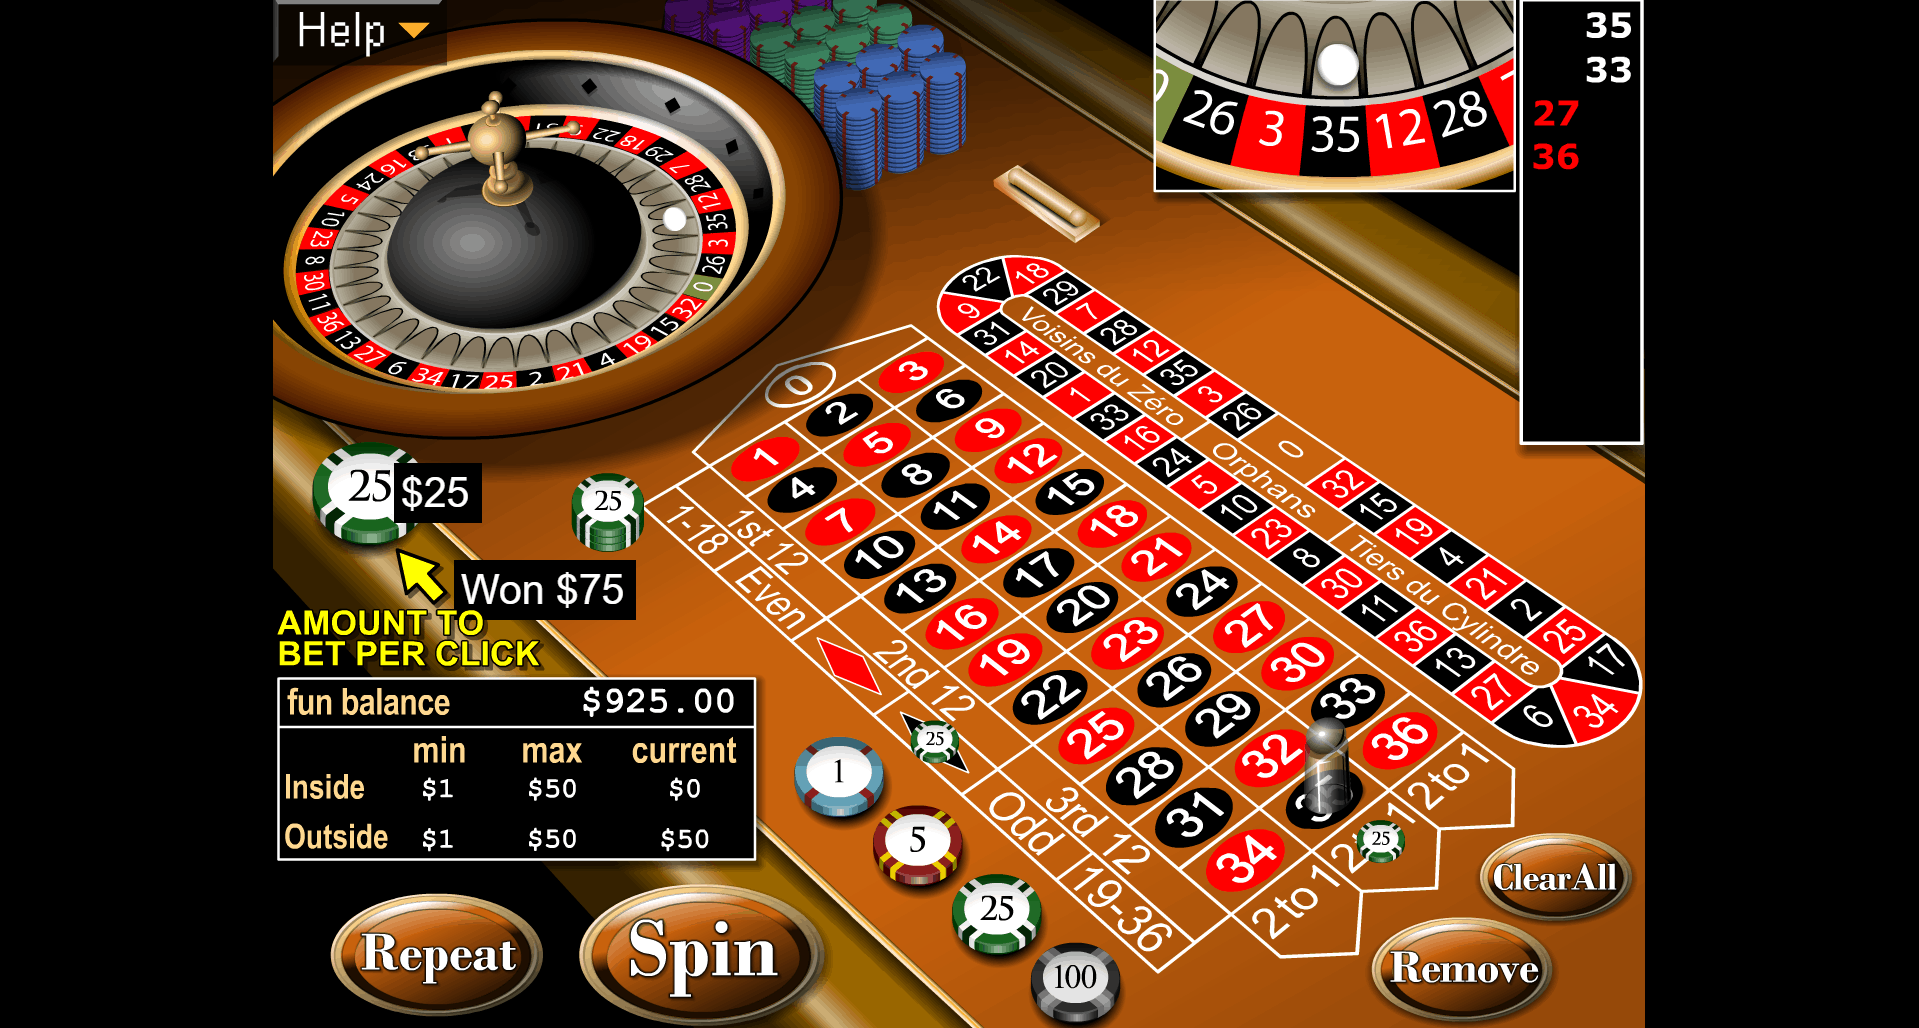 Slotastic Casino Bonus Codes 2020